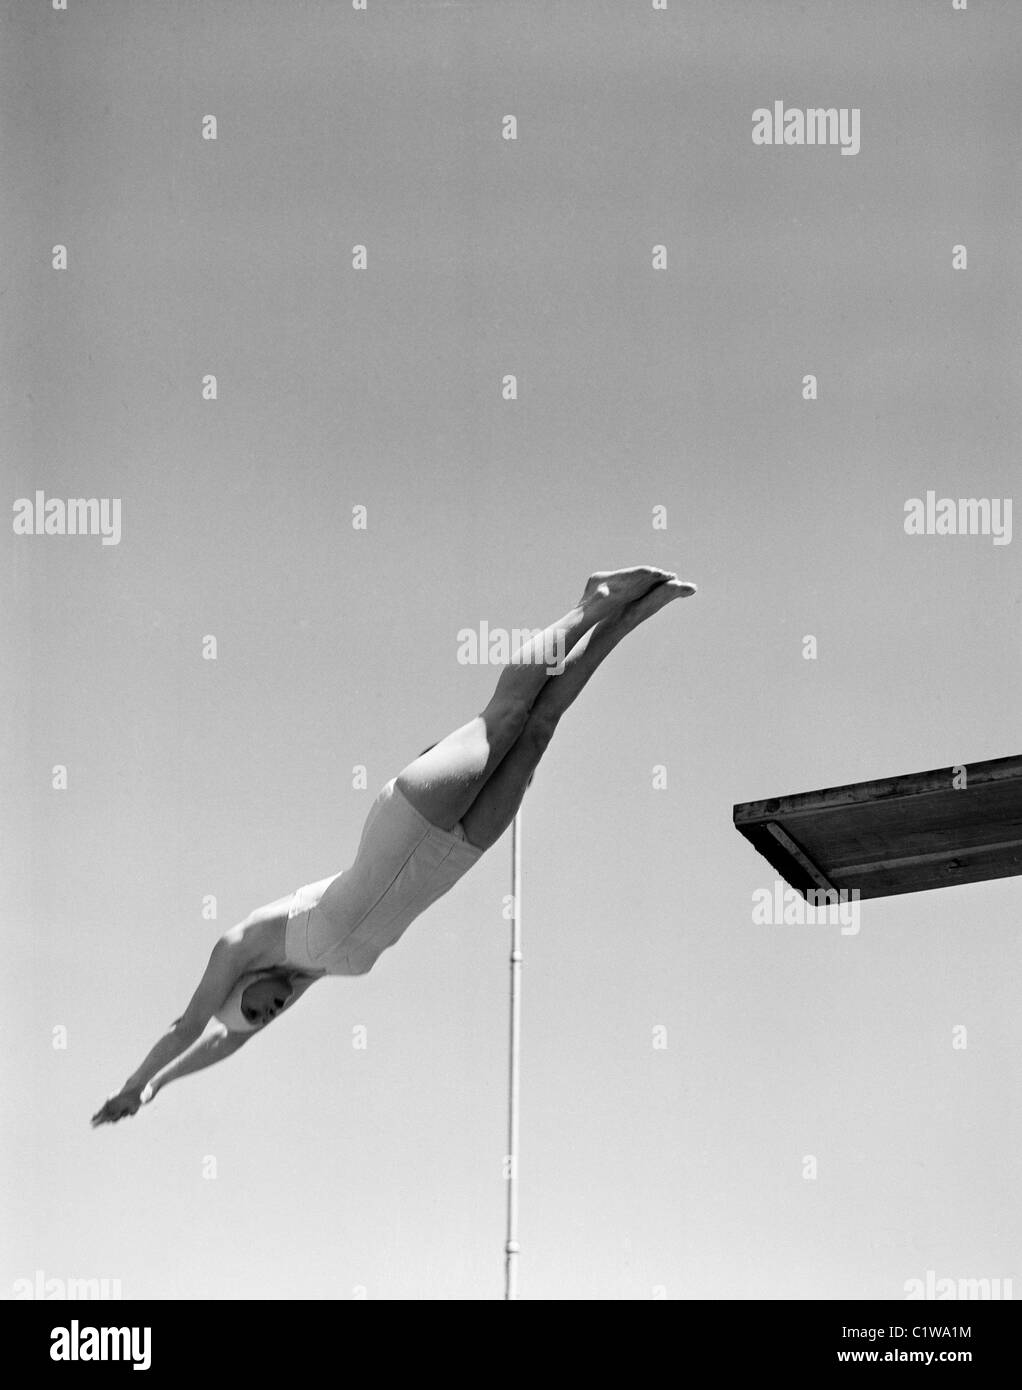 Schwimmer vom Sprungbrett springen Stockfoto